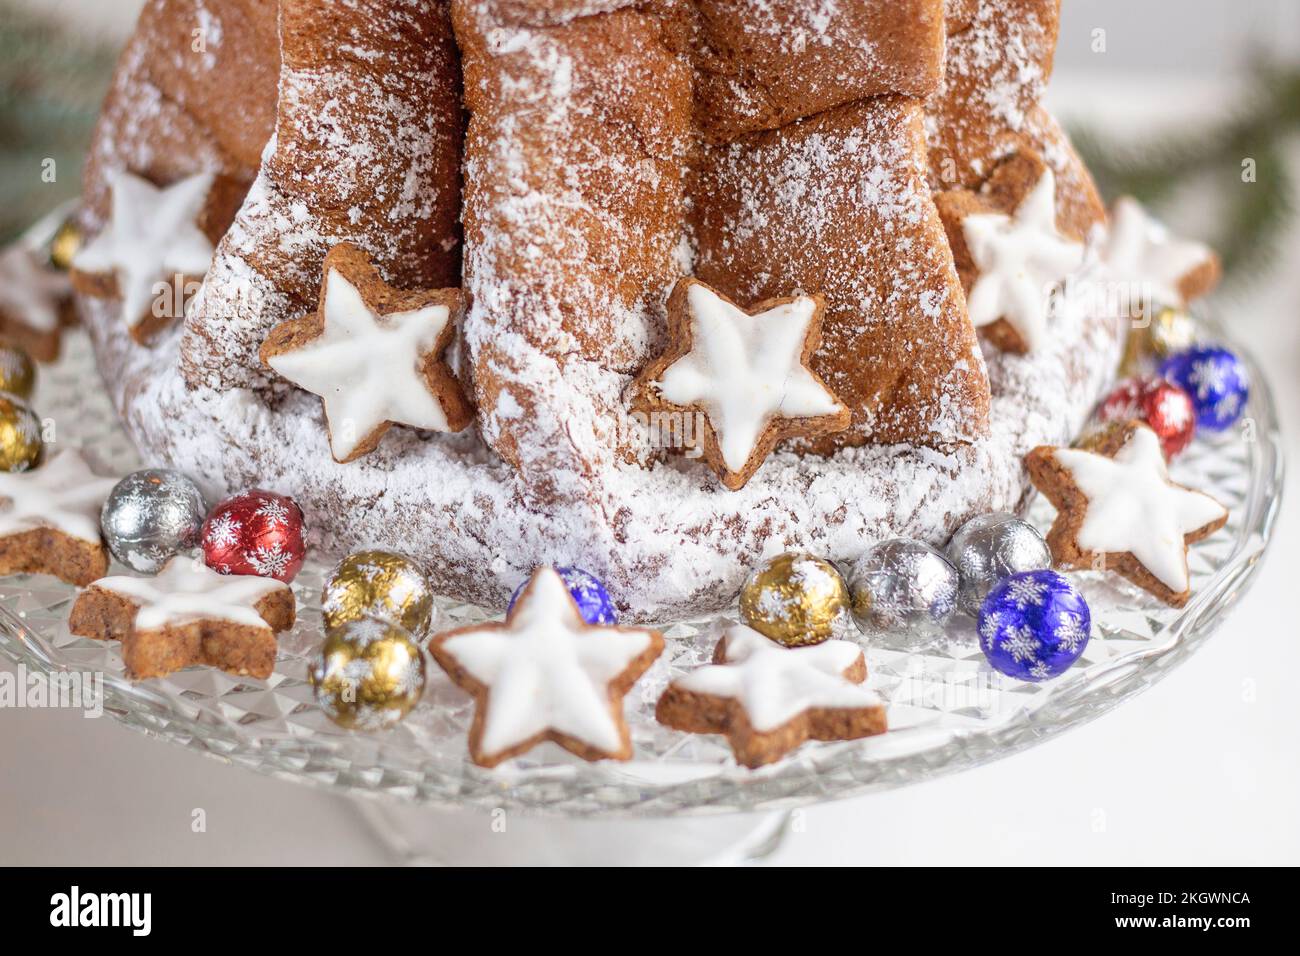 https://c8.alamy.com/comp/2KGWNCA/traditional-italian-christmas-cake-panettone-pandoro-christmas-decorations-copy-space-2KGWNCA.jpg